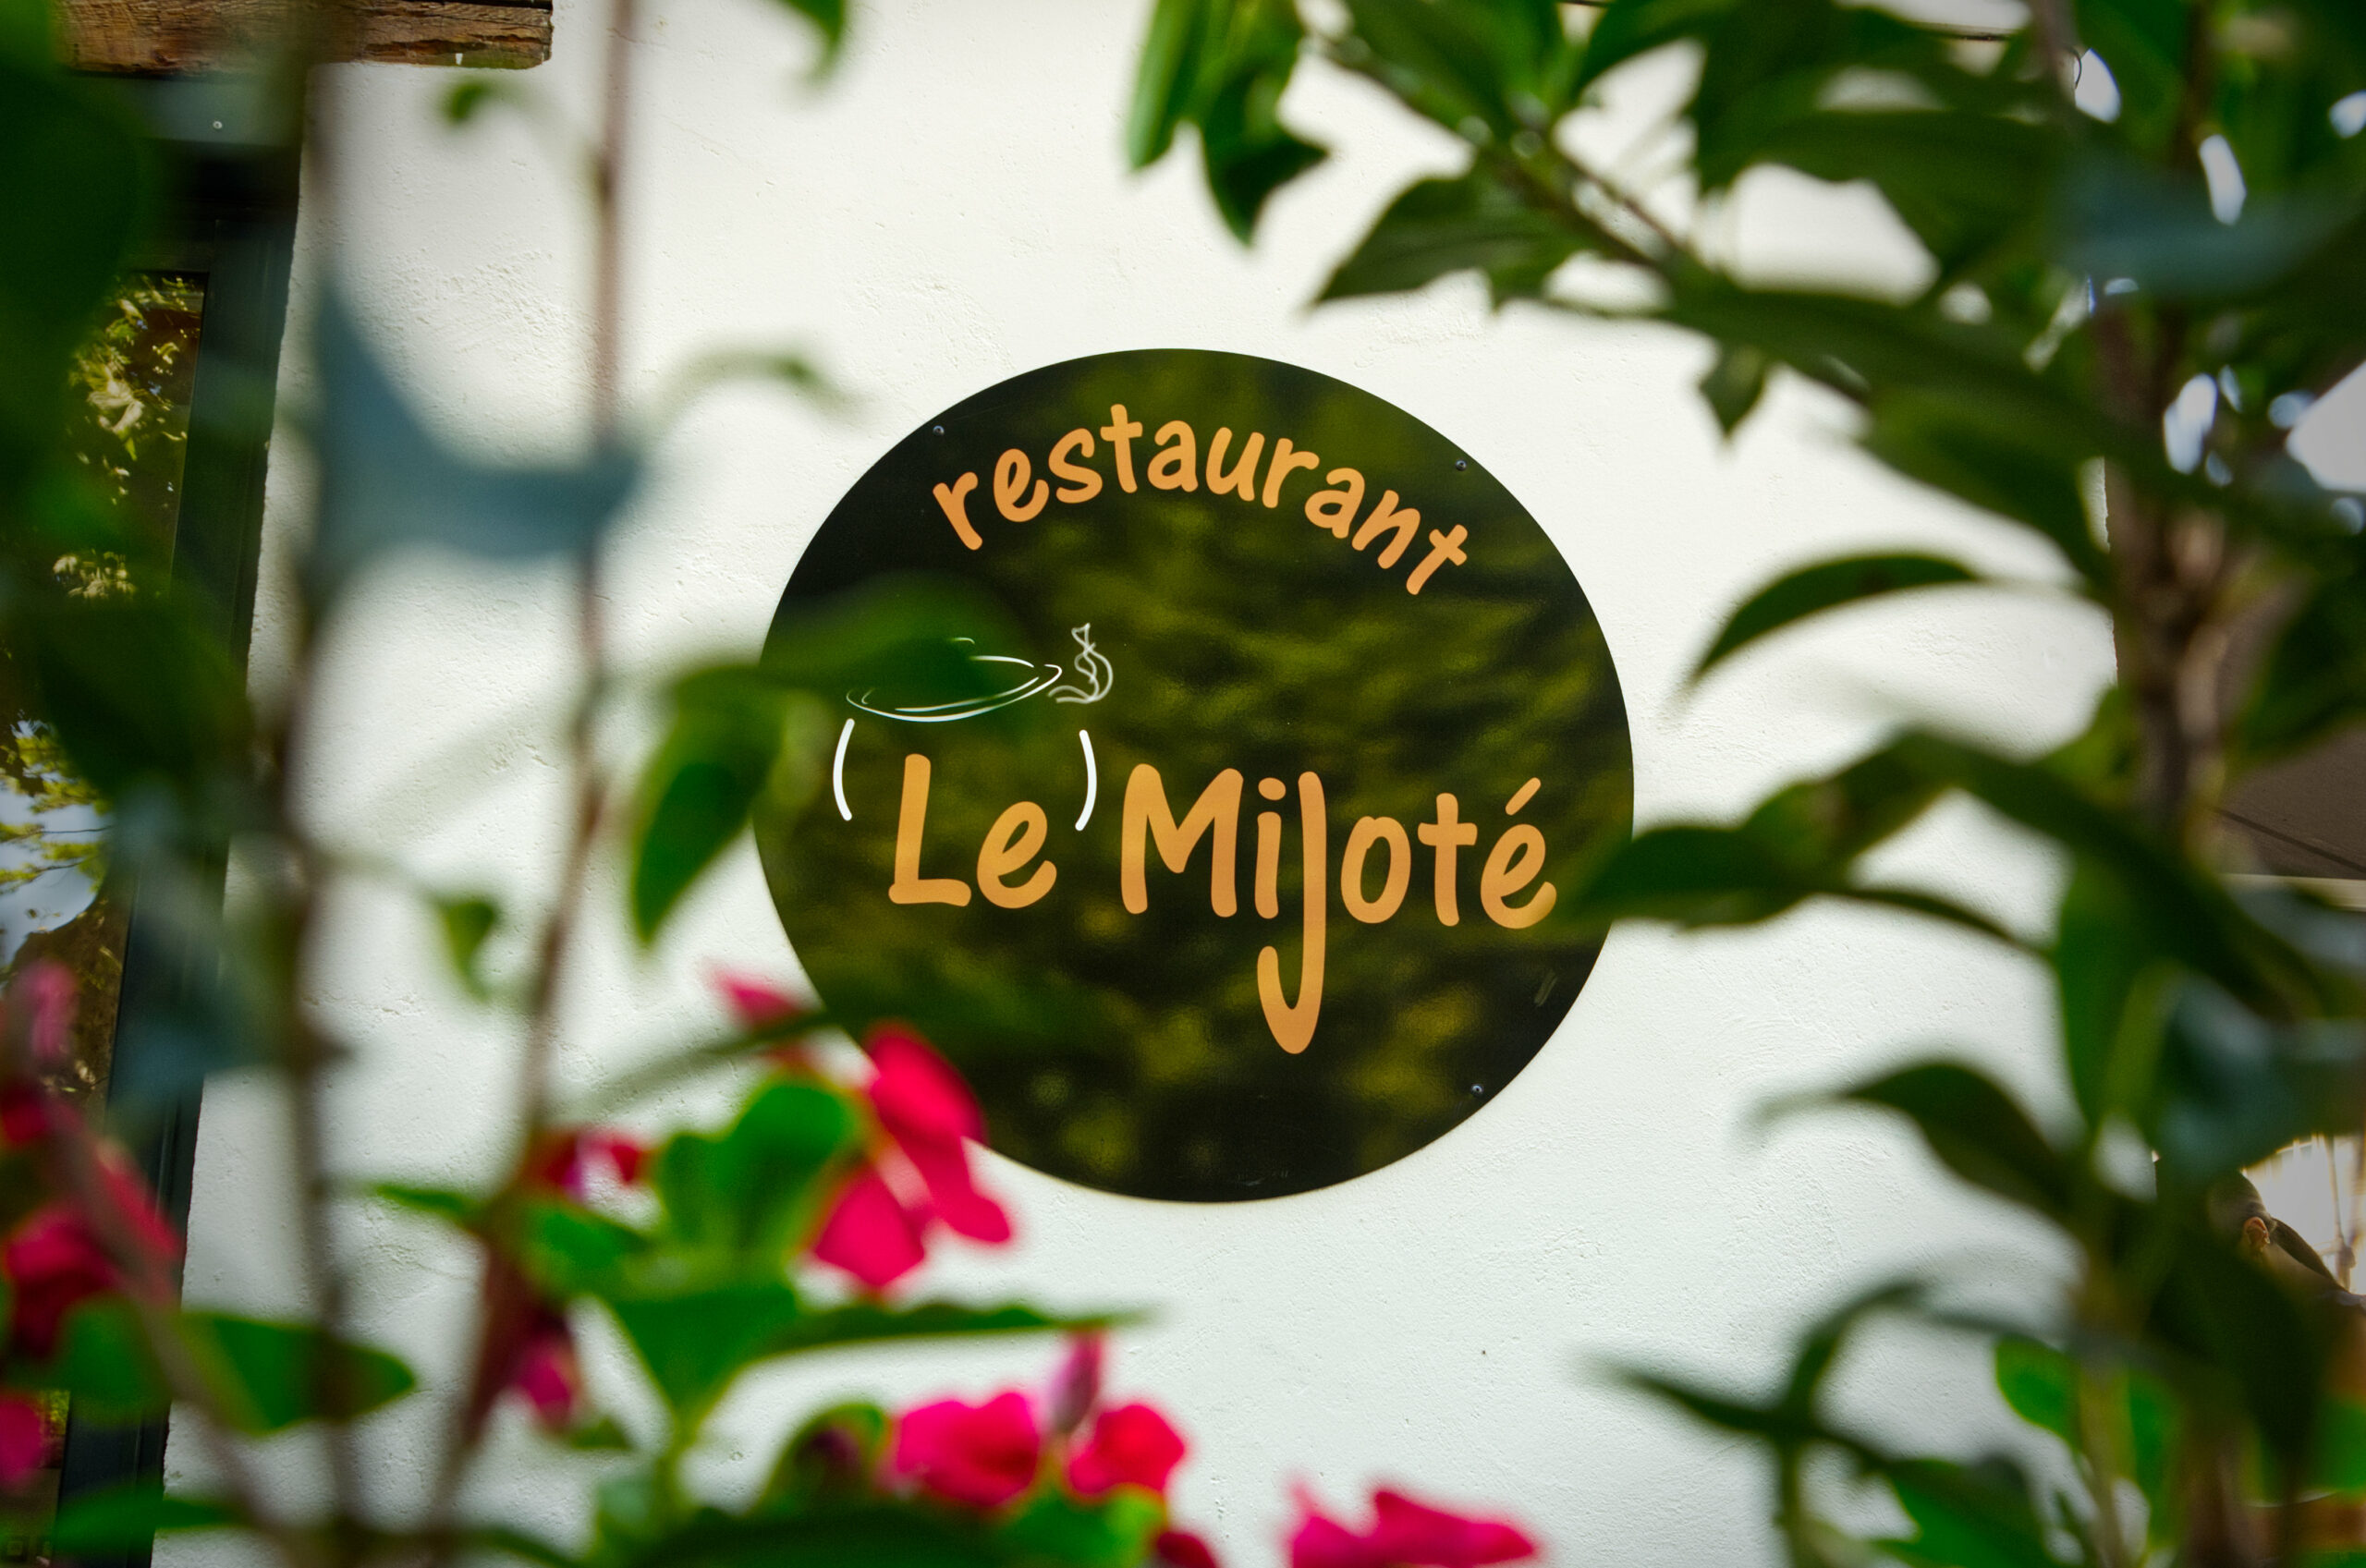 Enseigne du restaurant Le Mijoté sur la terrasse, vu au travers des fleurs.